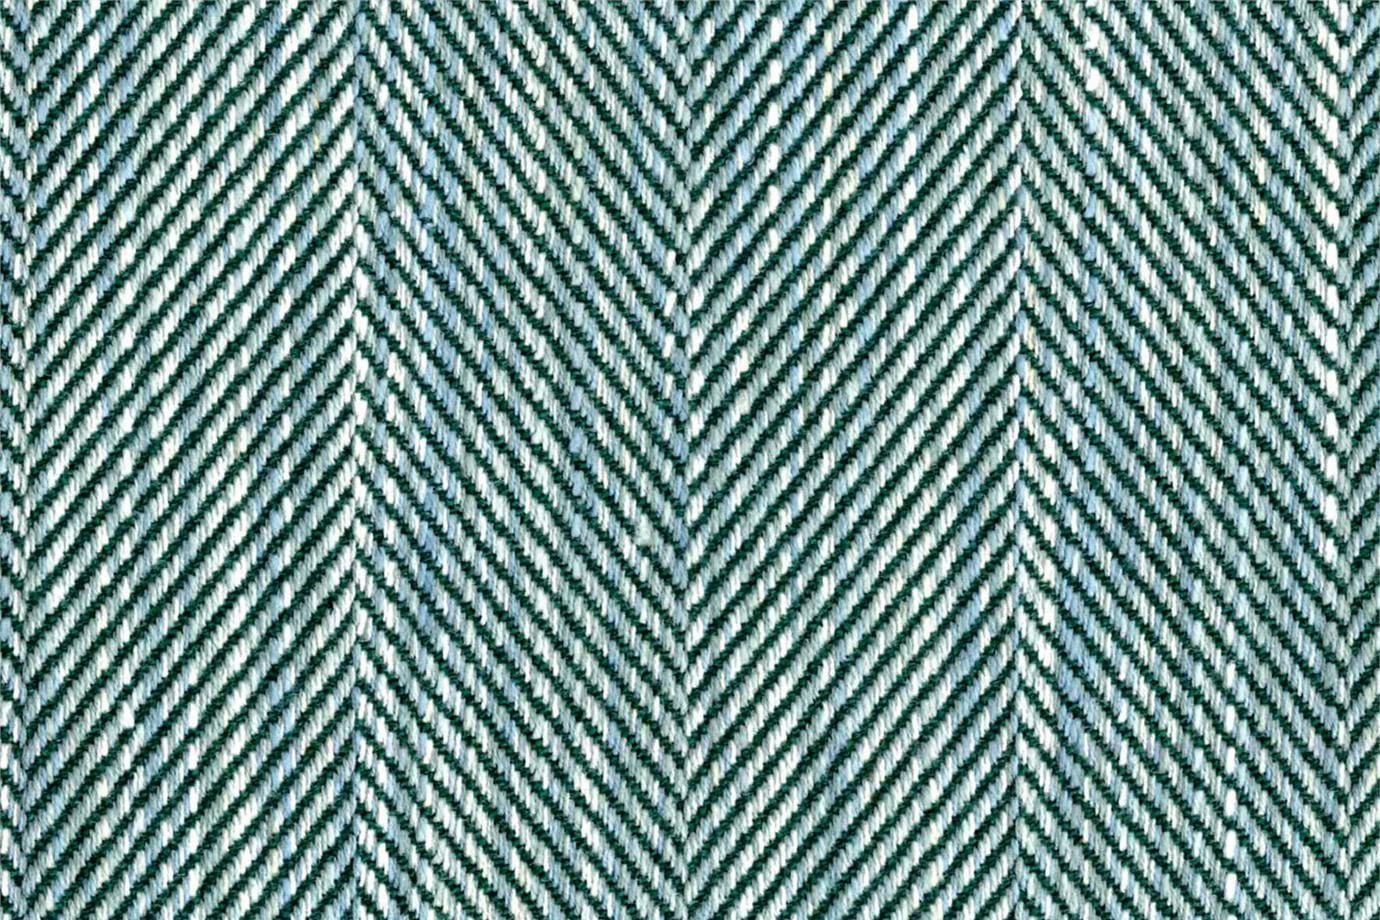 J3442 SPIGA 004 Verde acqua home decoration fabric